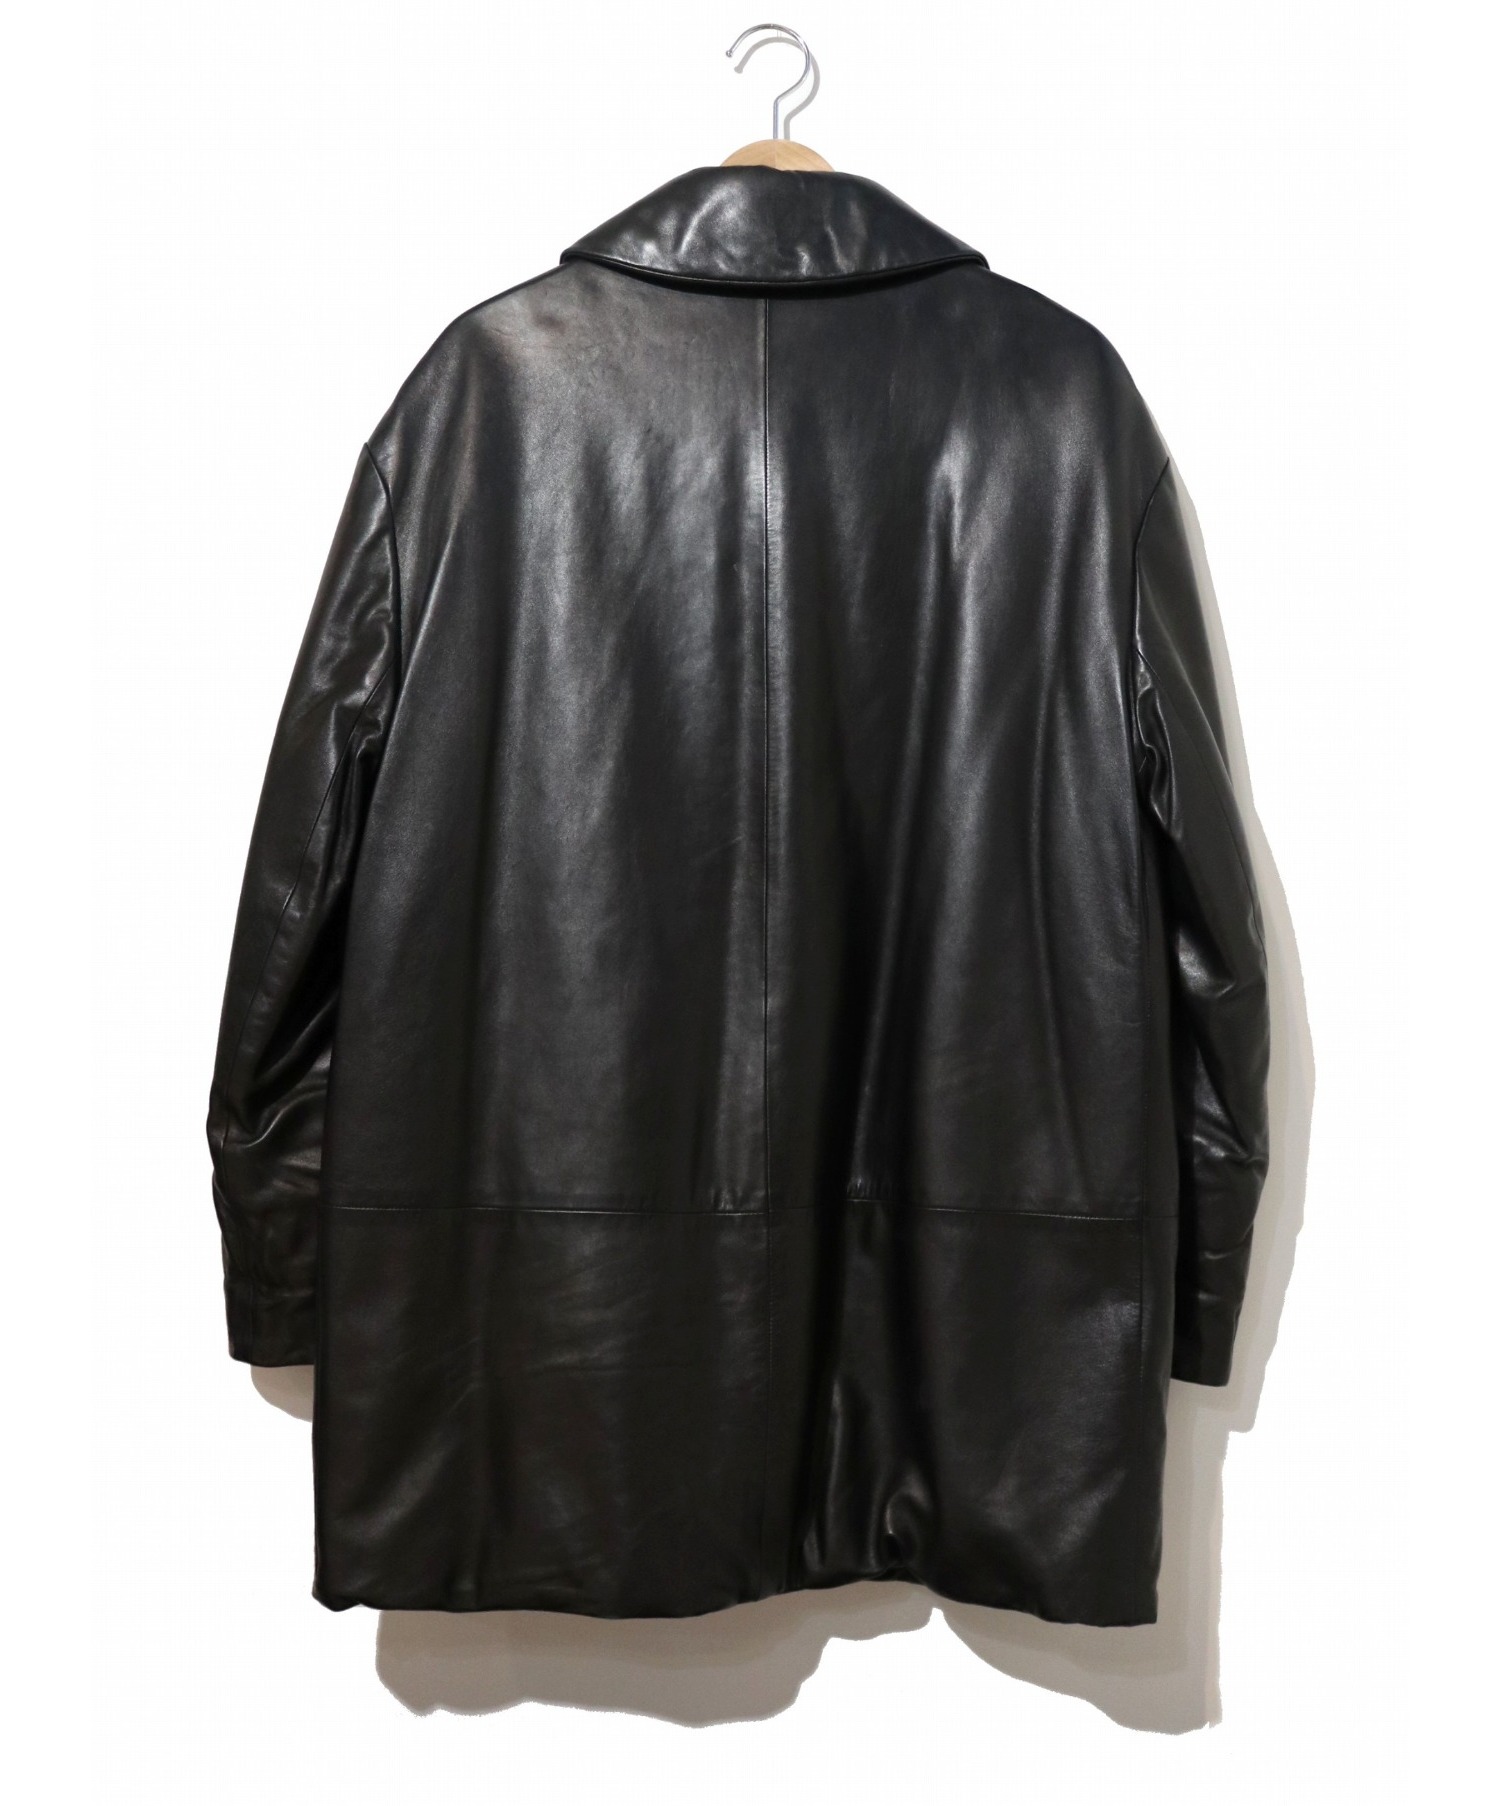 HERMES (エルメス) ラムレザー中綿コート ブラック サイズ:38 マルジェラ期・90s・フランス製